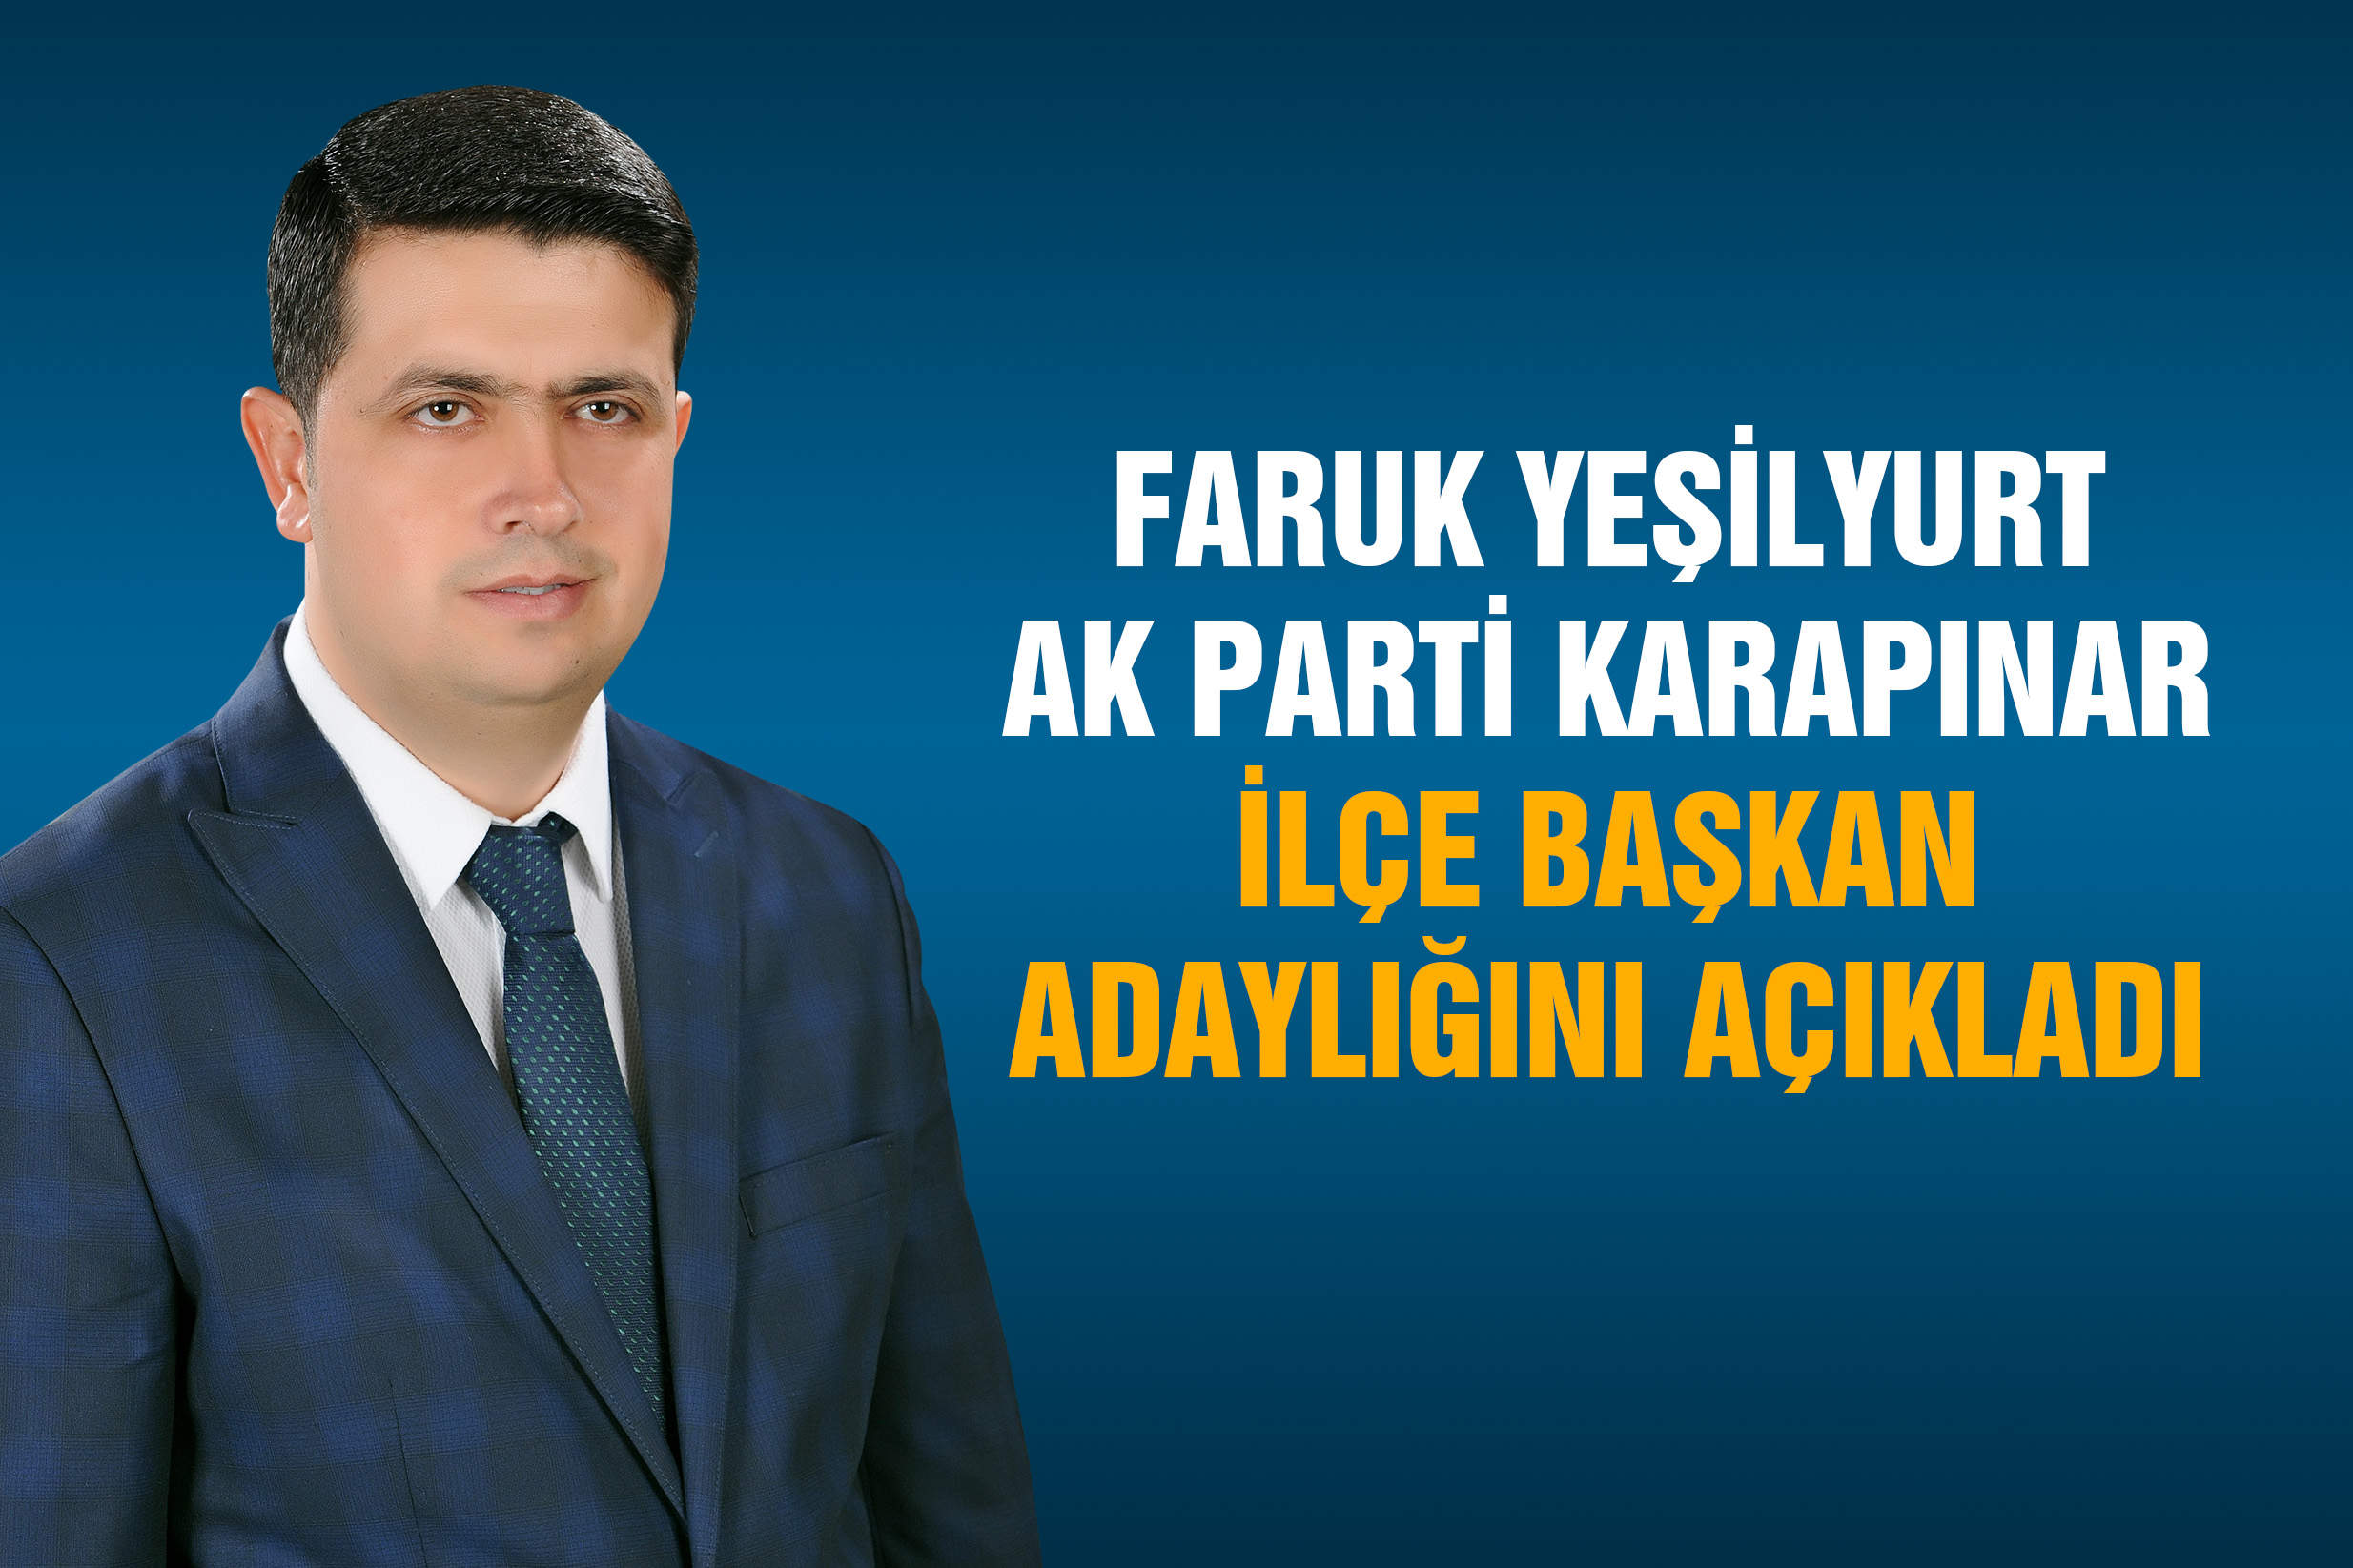 AK partiden Faruk Yeşilyurt başkan adayı oldu